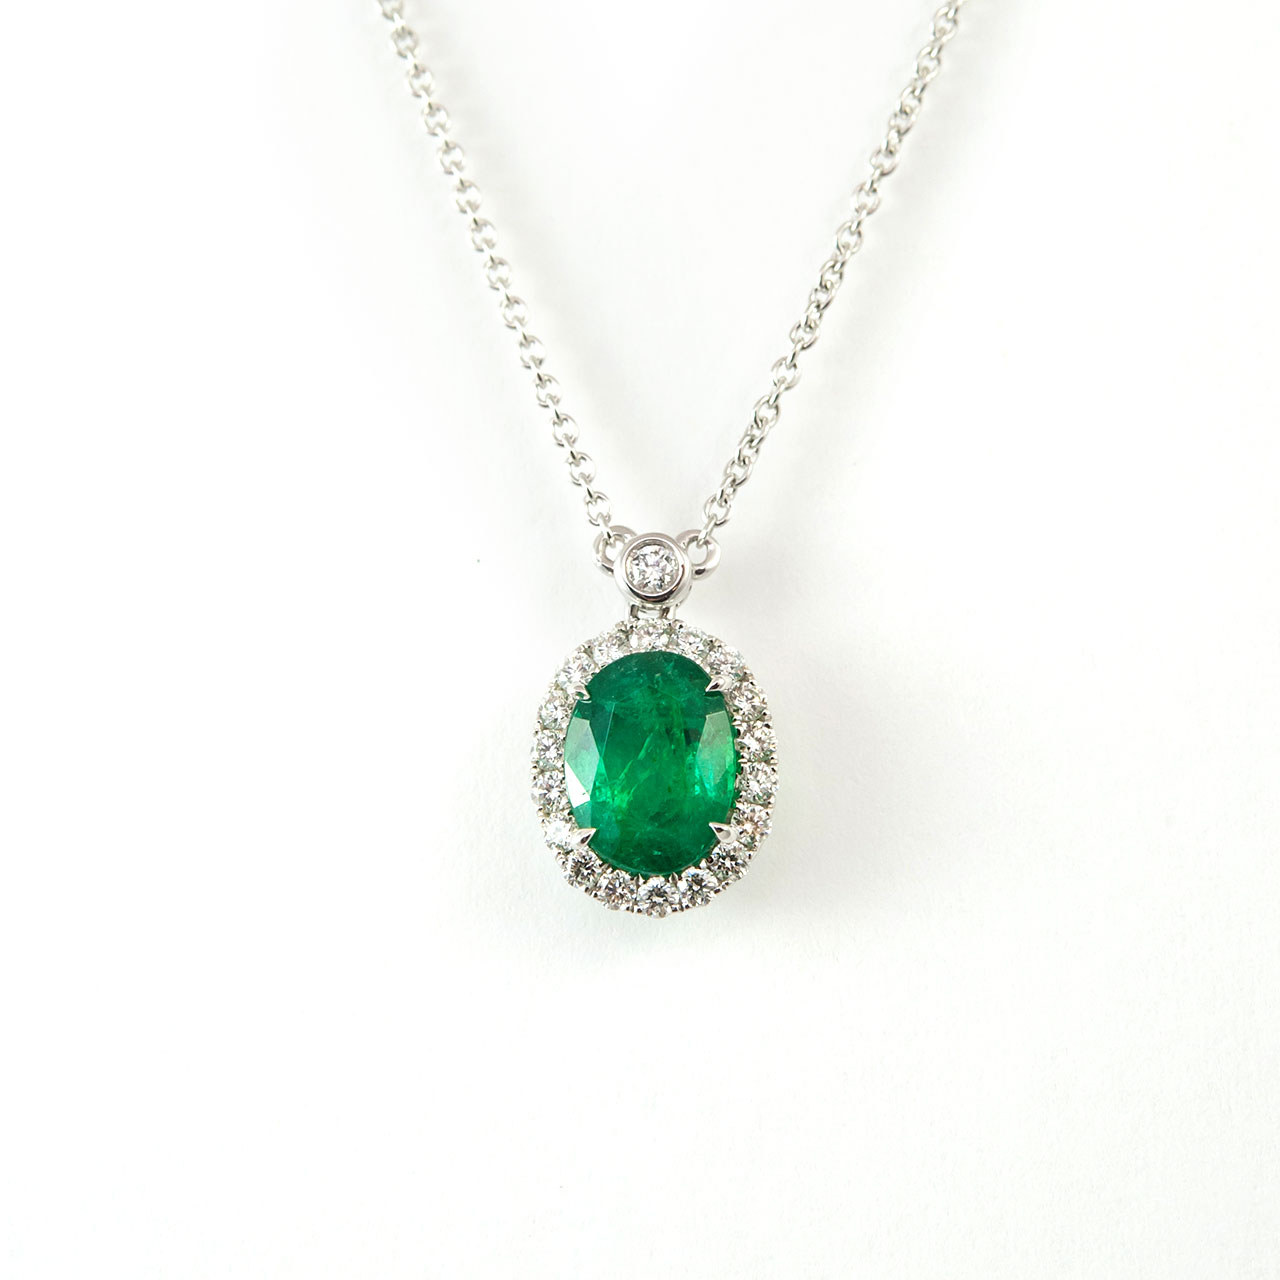 Emerald - Every GEM has its Story! BulkGemstones.com